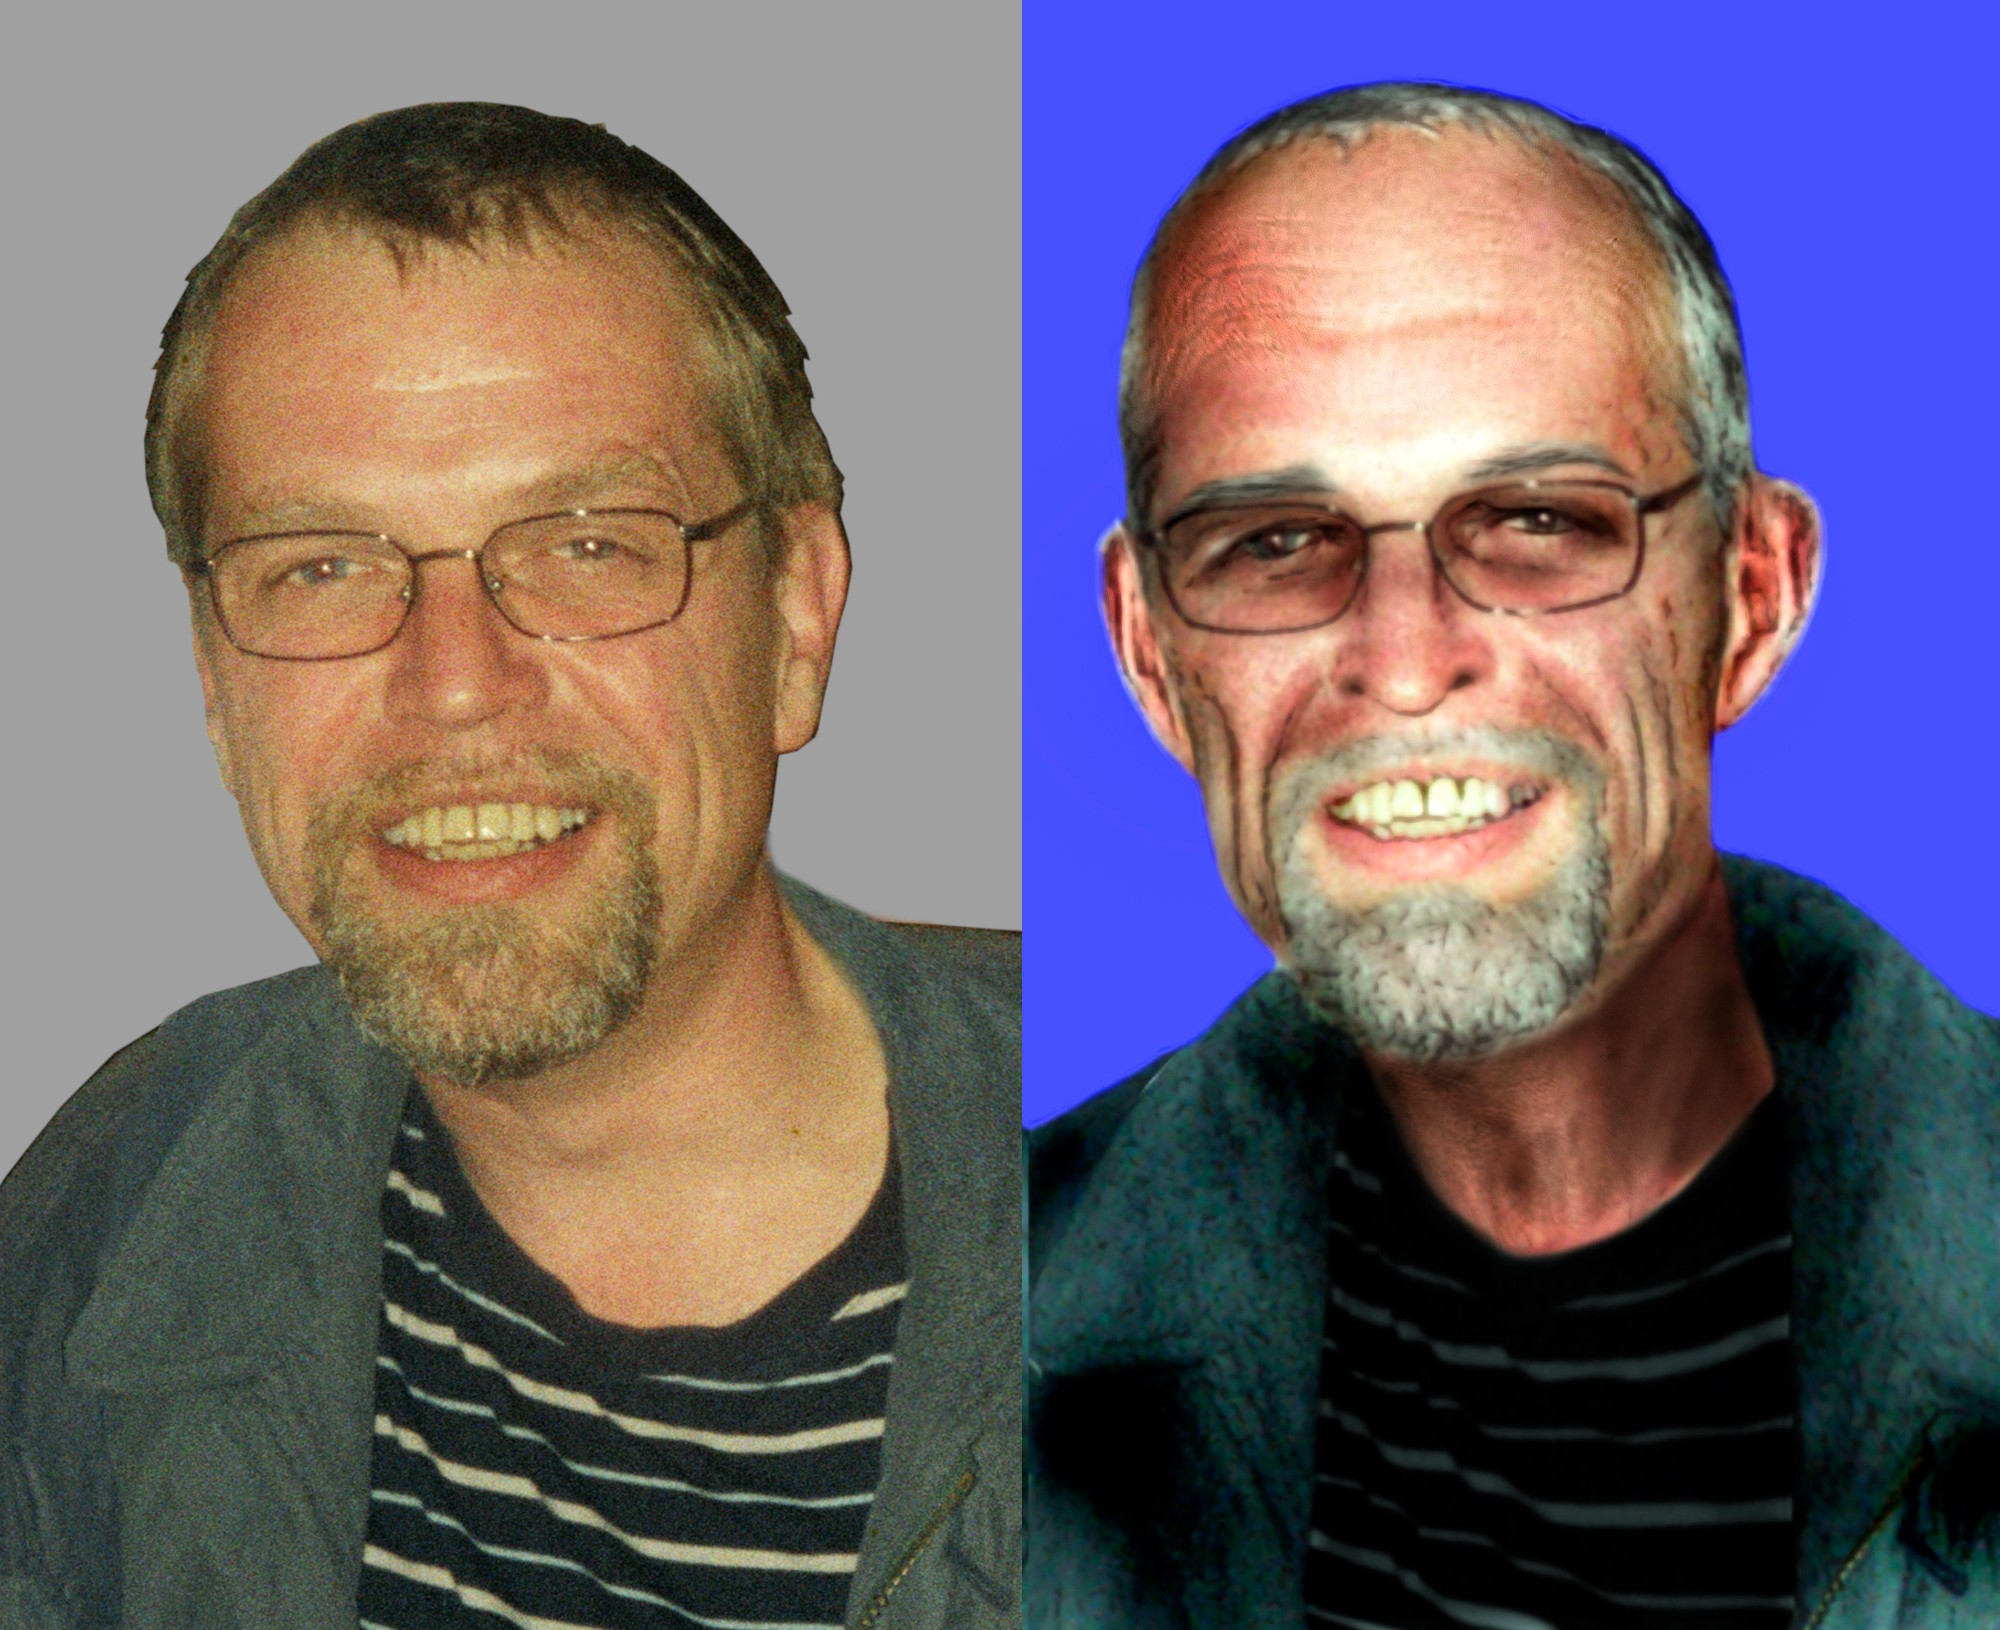 Mit diesen Bildern fahndet die Polizei nach dem RAF-Terroristen Ernst-Volker Staub. Die linke Aufnahme zeigt ihn im Jahr 2002. Die rechte wurde von den Ermittlern gealtert, um zu zeigen, wie er heute aussehen könnte.